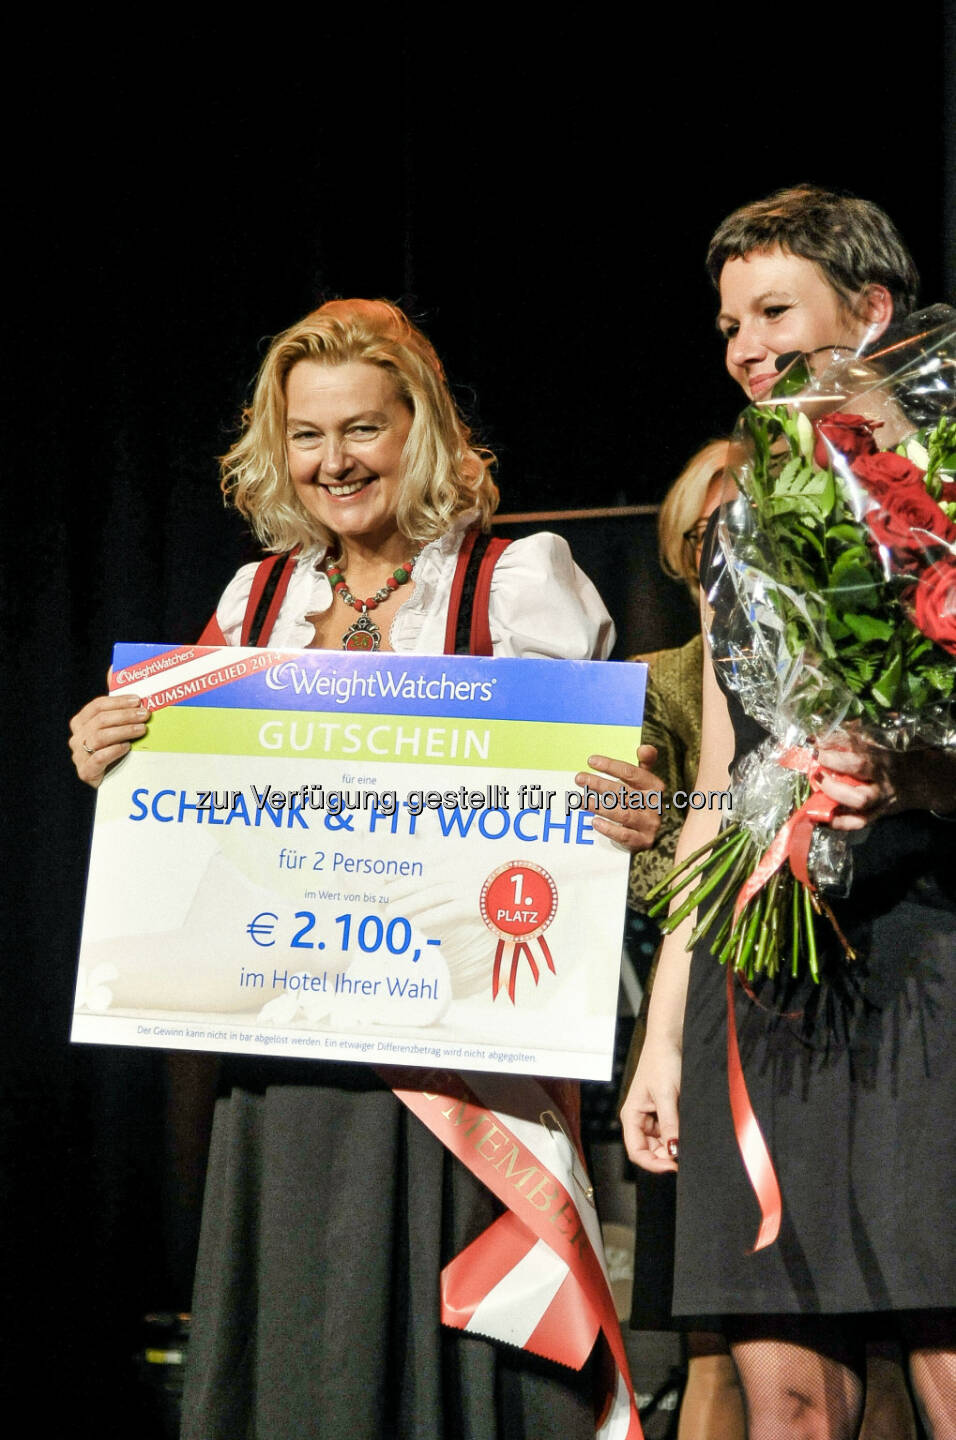 Weight Watchers Österreich: Event: 40 Jahre Weight Watchers Österreich - Wahl zum erfolgreichsten Mitglied aus 40 Jahren. Das erfolgreichste Mitglied der letzten 40 Jahre -Doris Schwarzbach